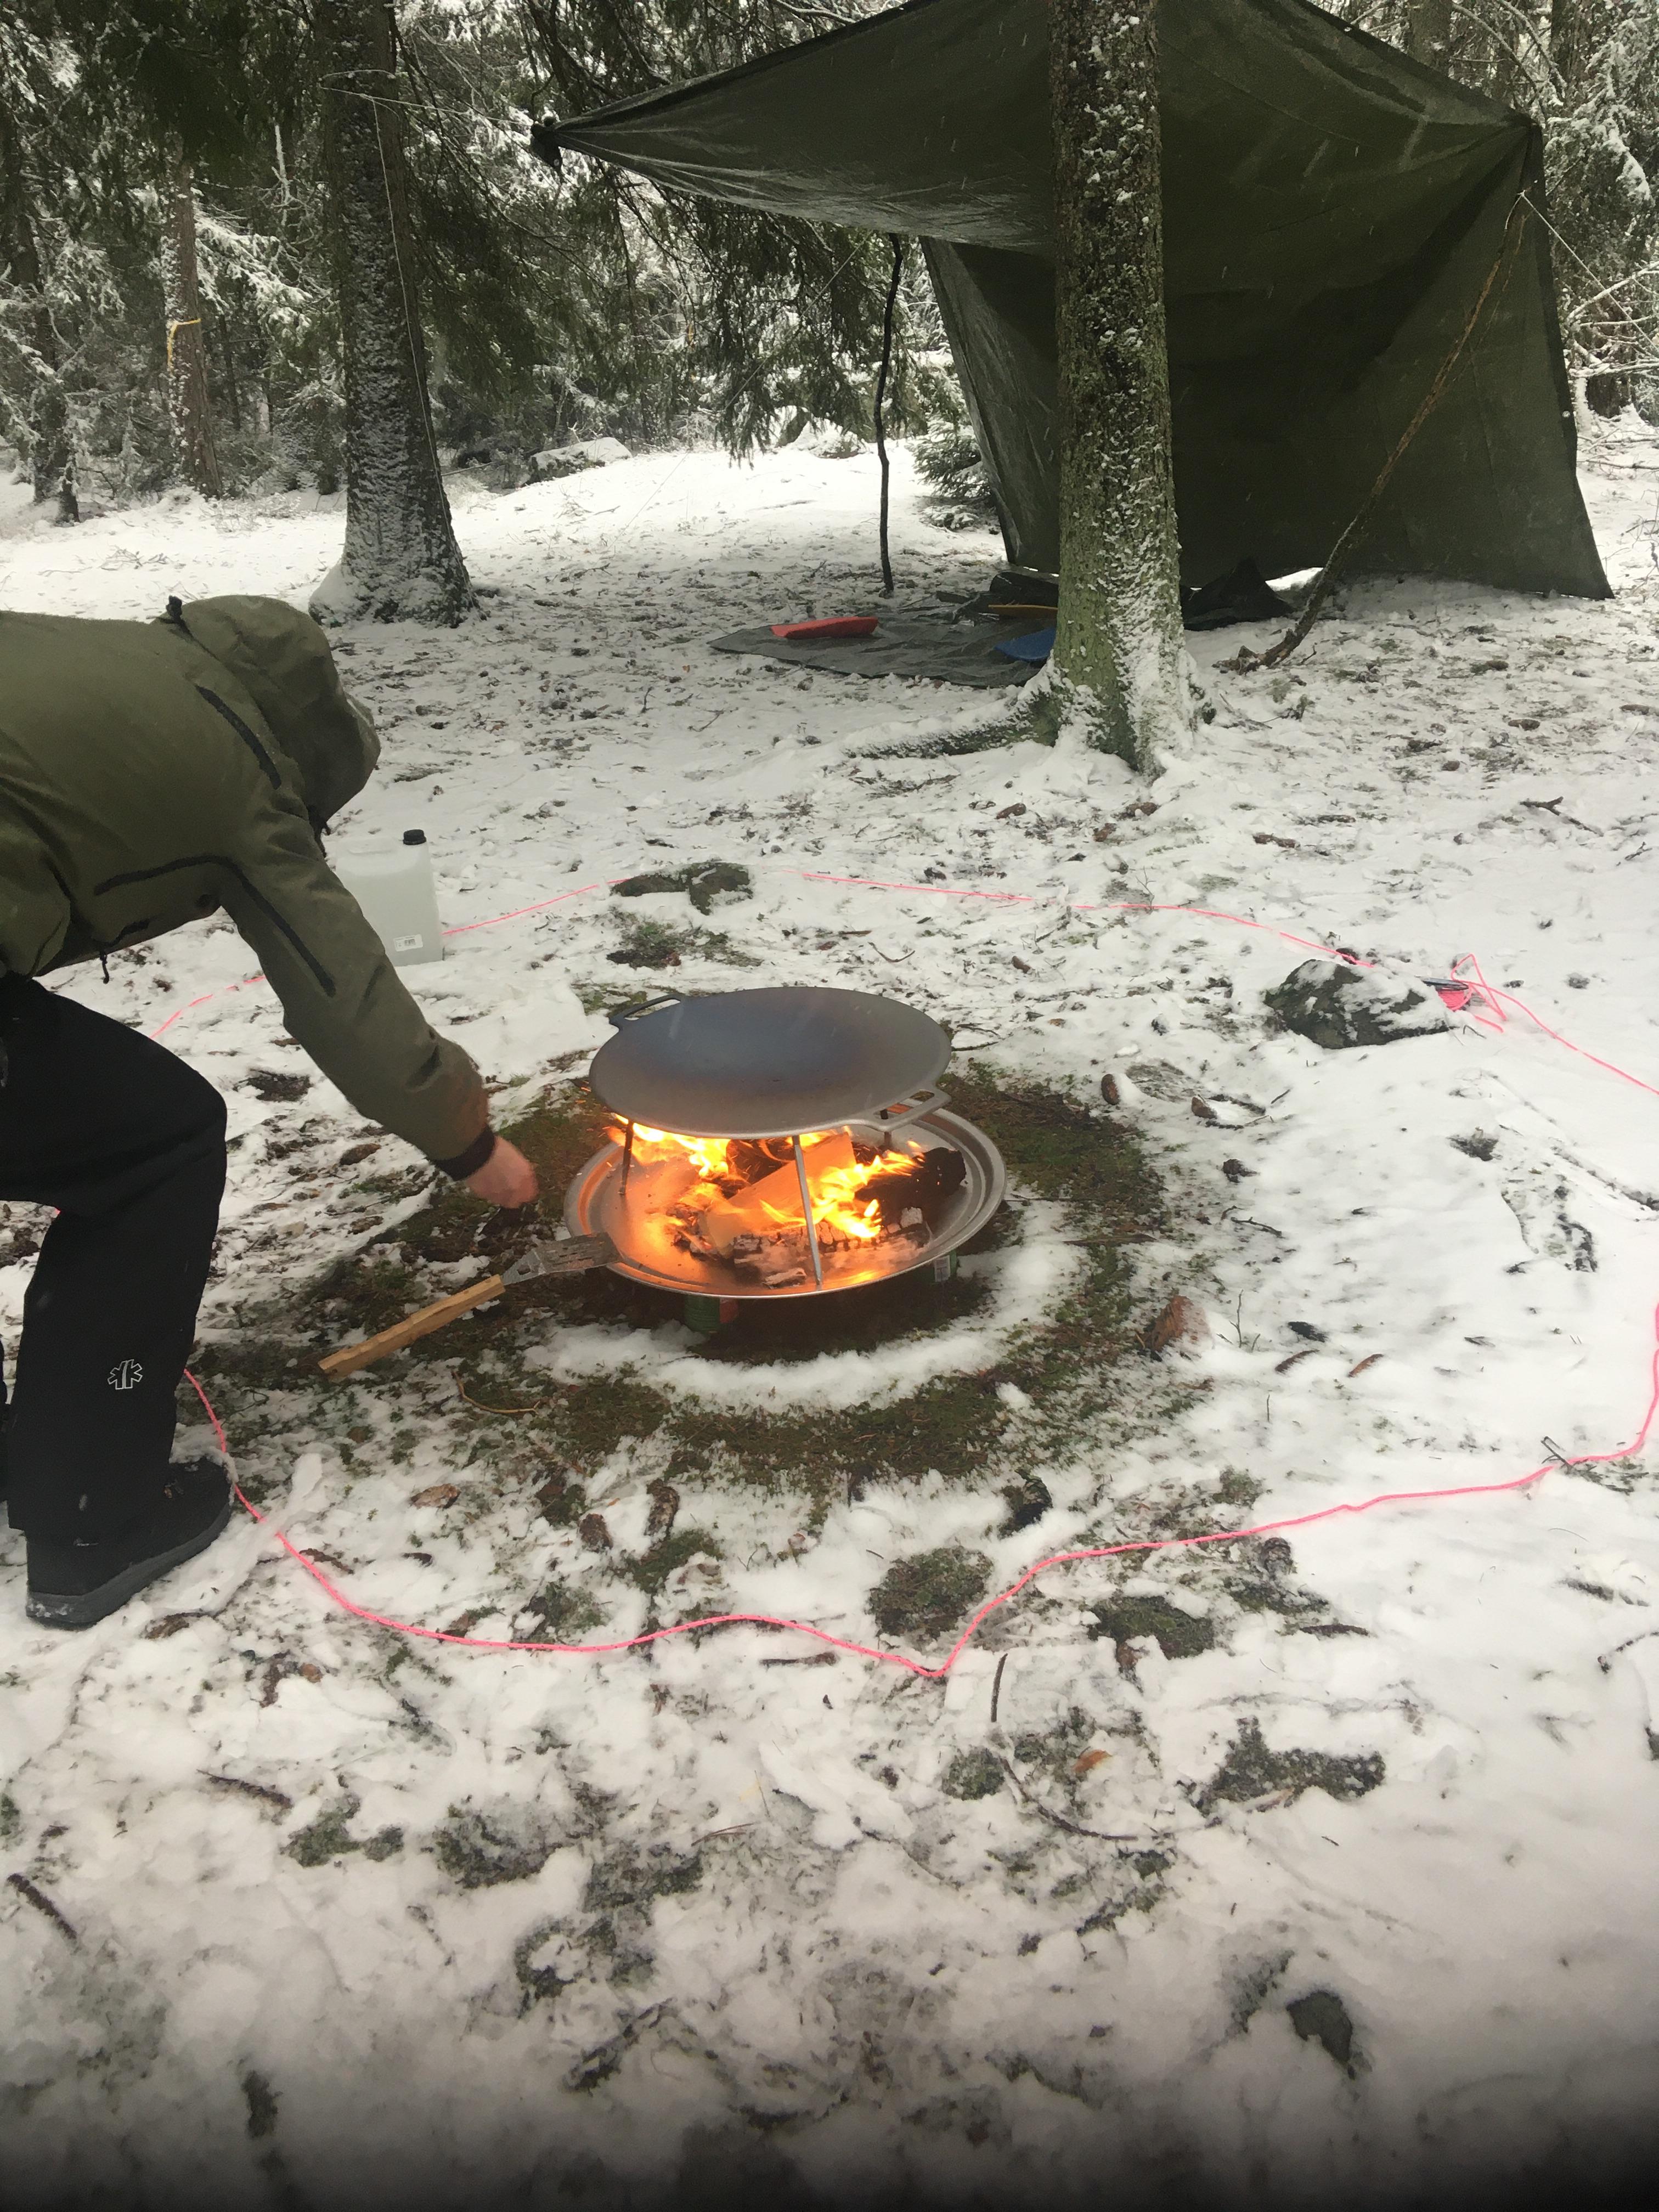 Muurika med brinnande eld och en lägerplats i skogen